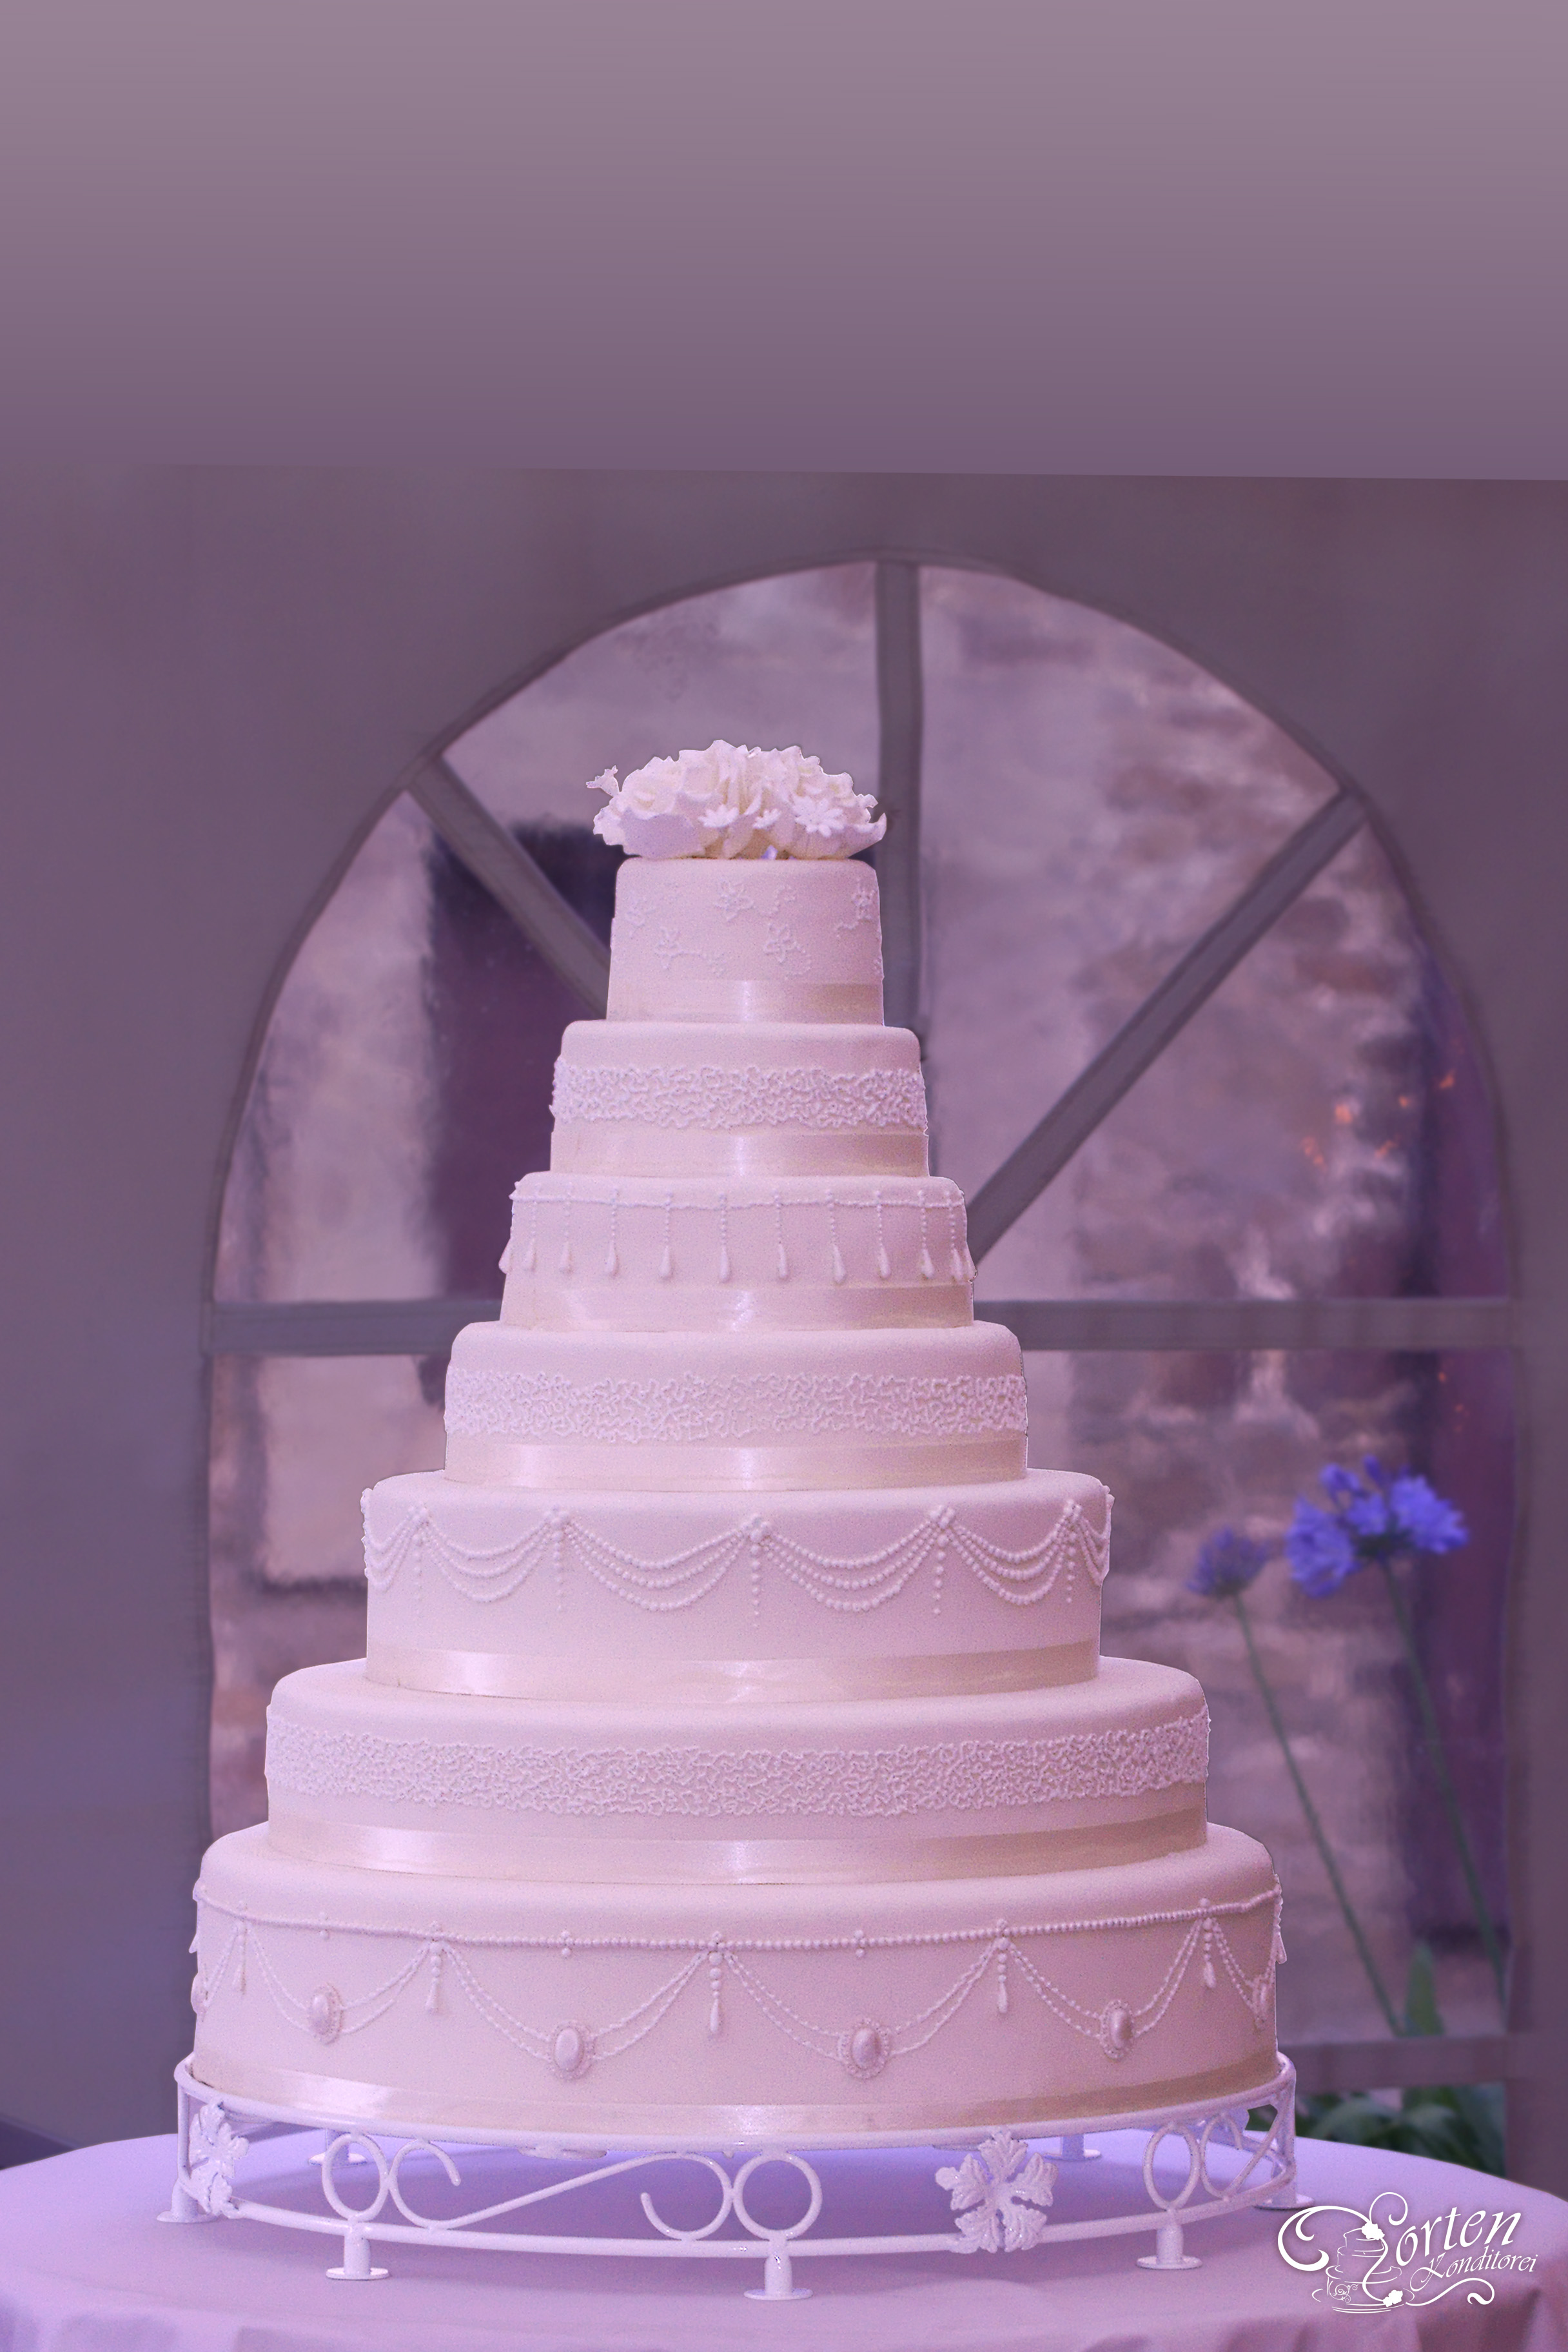 7 stöckige riesen-große Hochzeitstorte kombiniert aus Genus und wahnsinniger Optik. Die untere Torte hat einen Durchmesser von ca. 70cm.